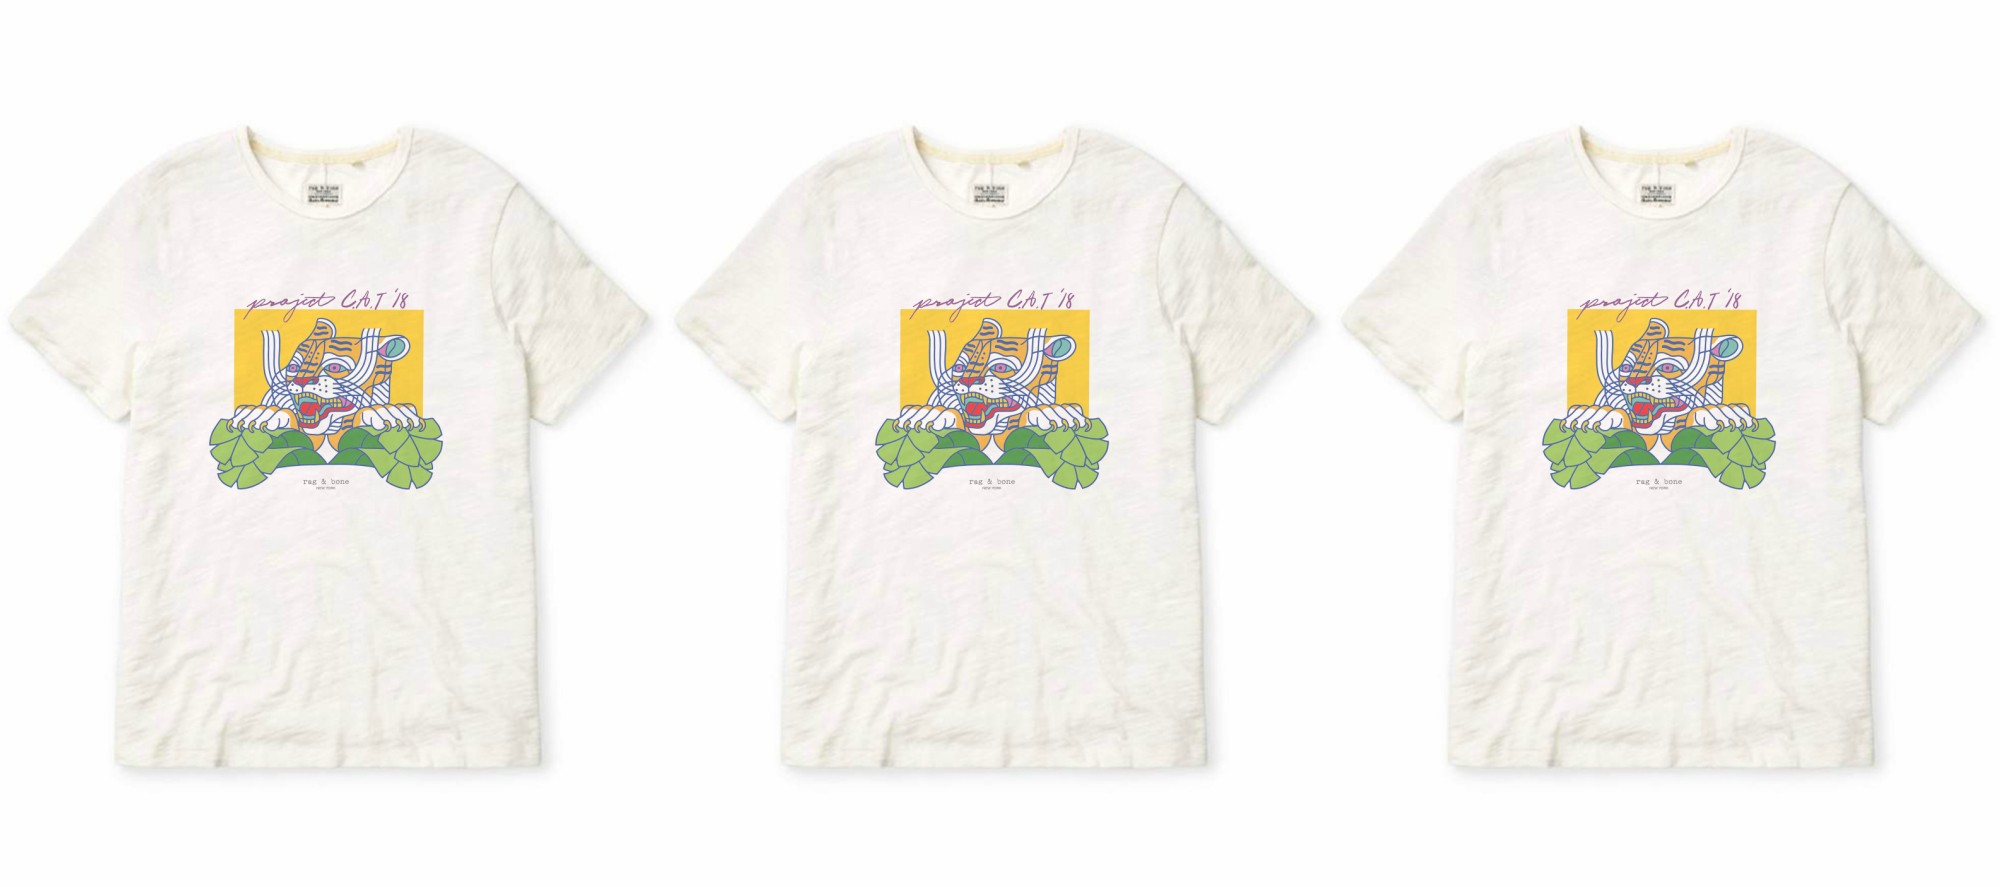 Rag & Bone выпустили футболки в поддержку тигров